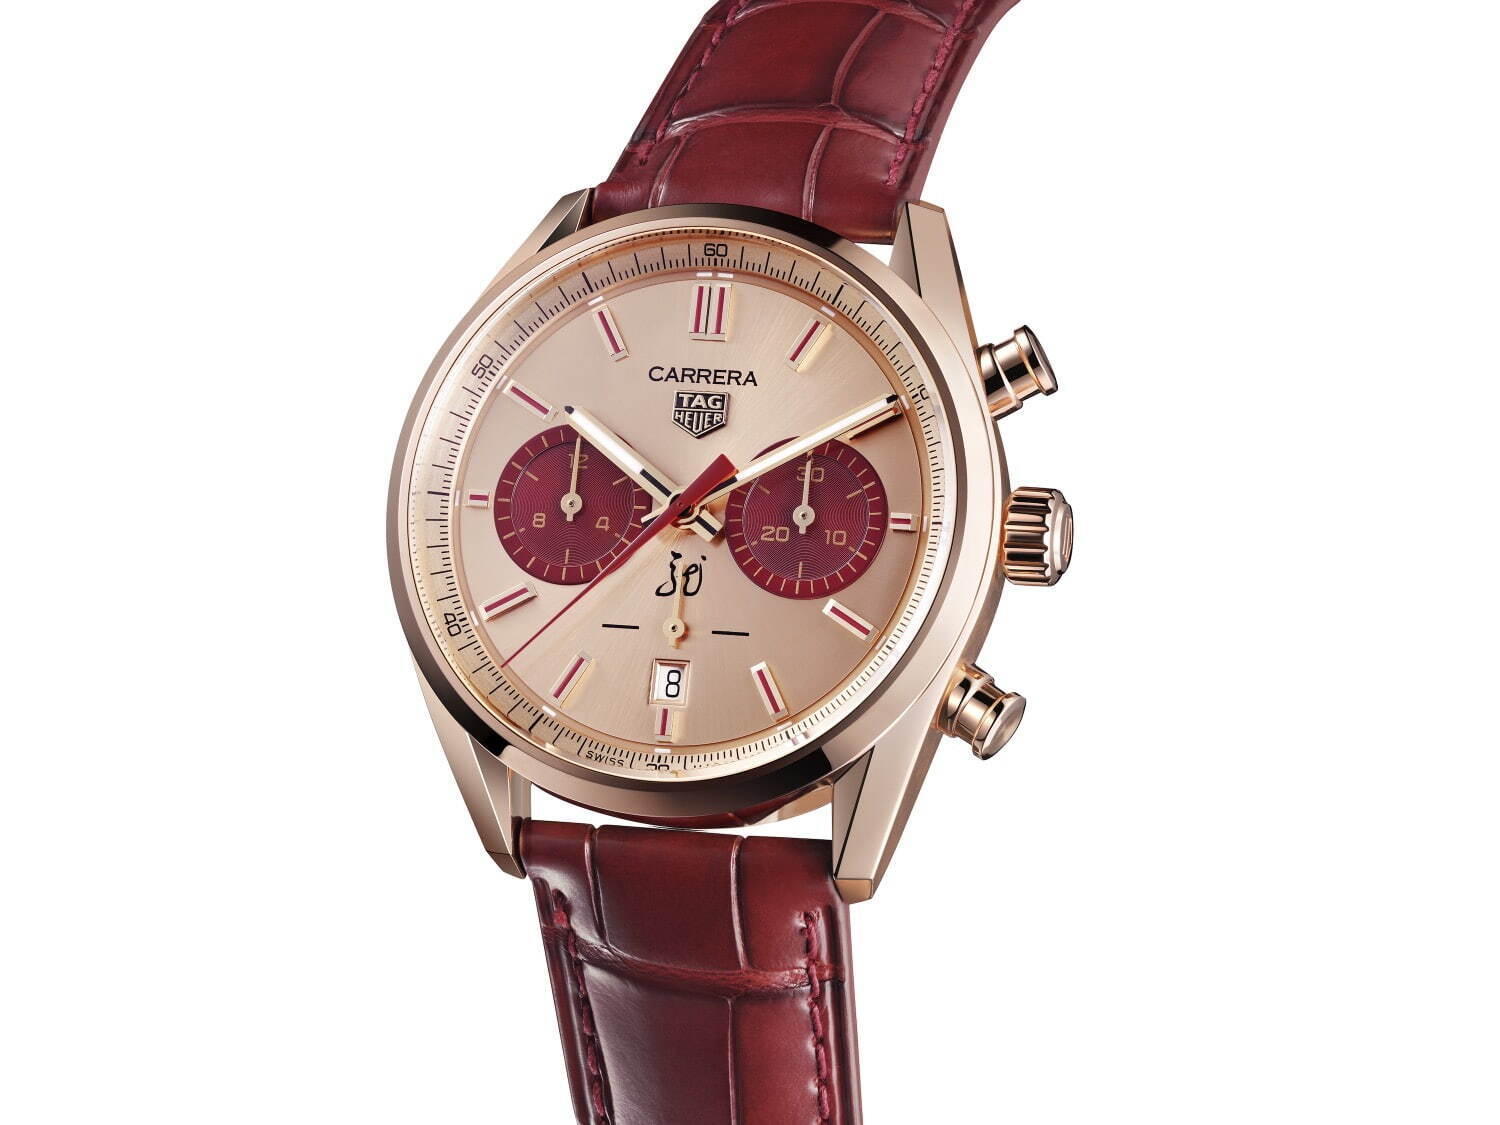 タグ・ホイヤーの腕時計「カレラ」“龍”に着想した限定モデル、“レッド 